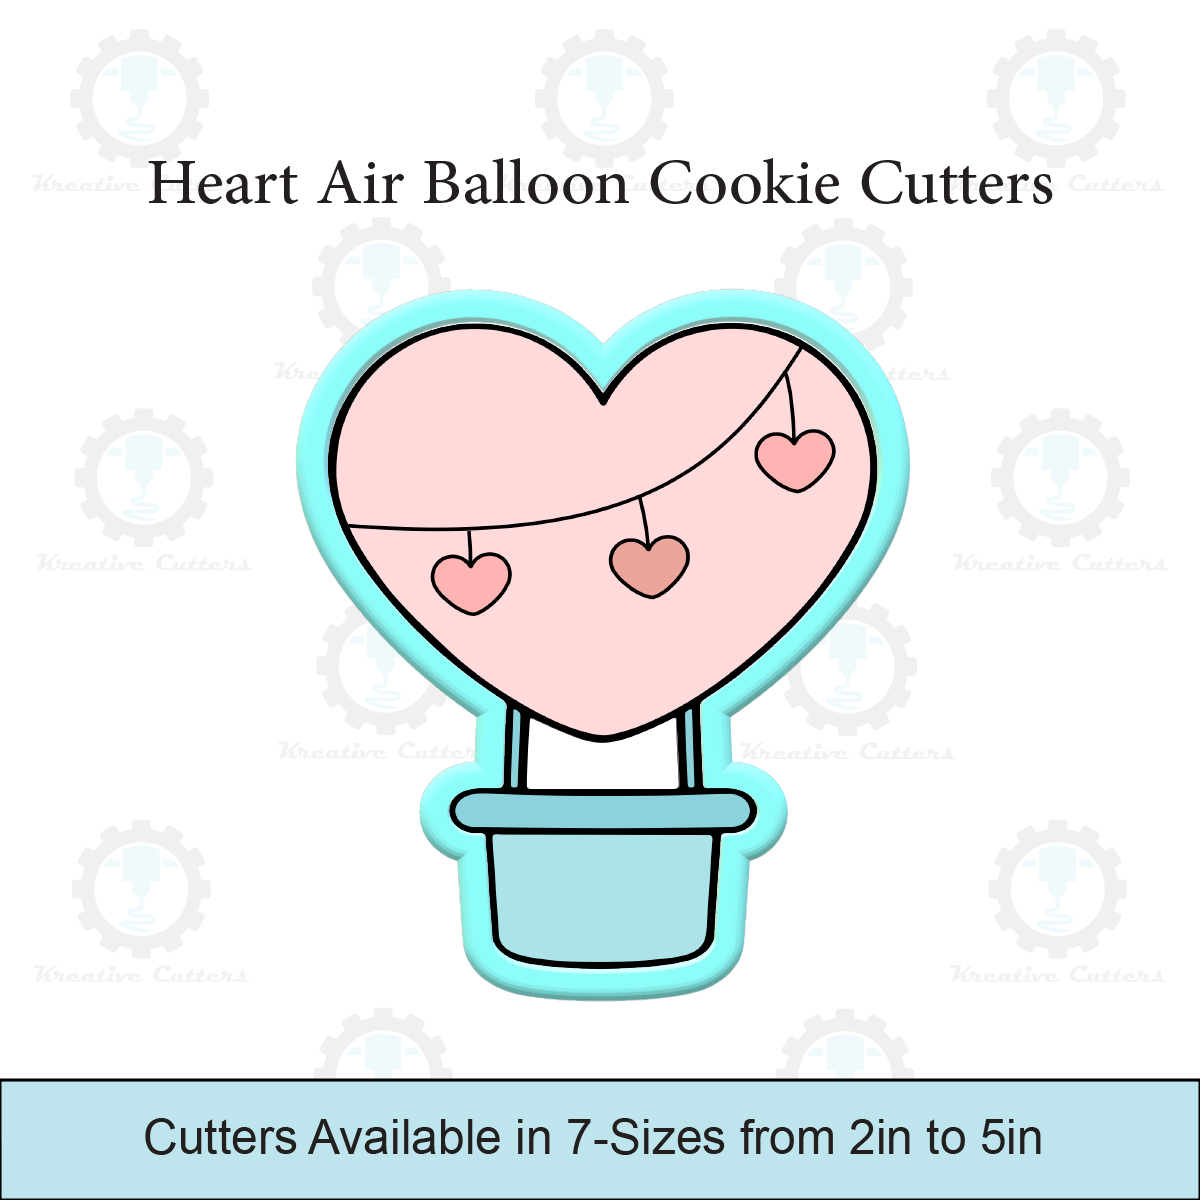 Heart Air Balloon Cookie Cutters